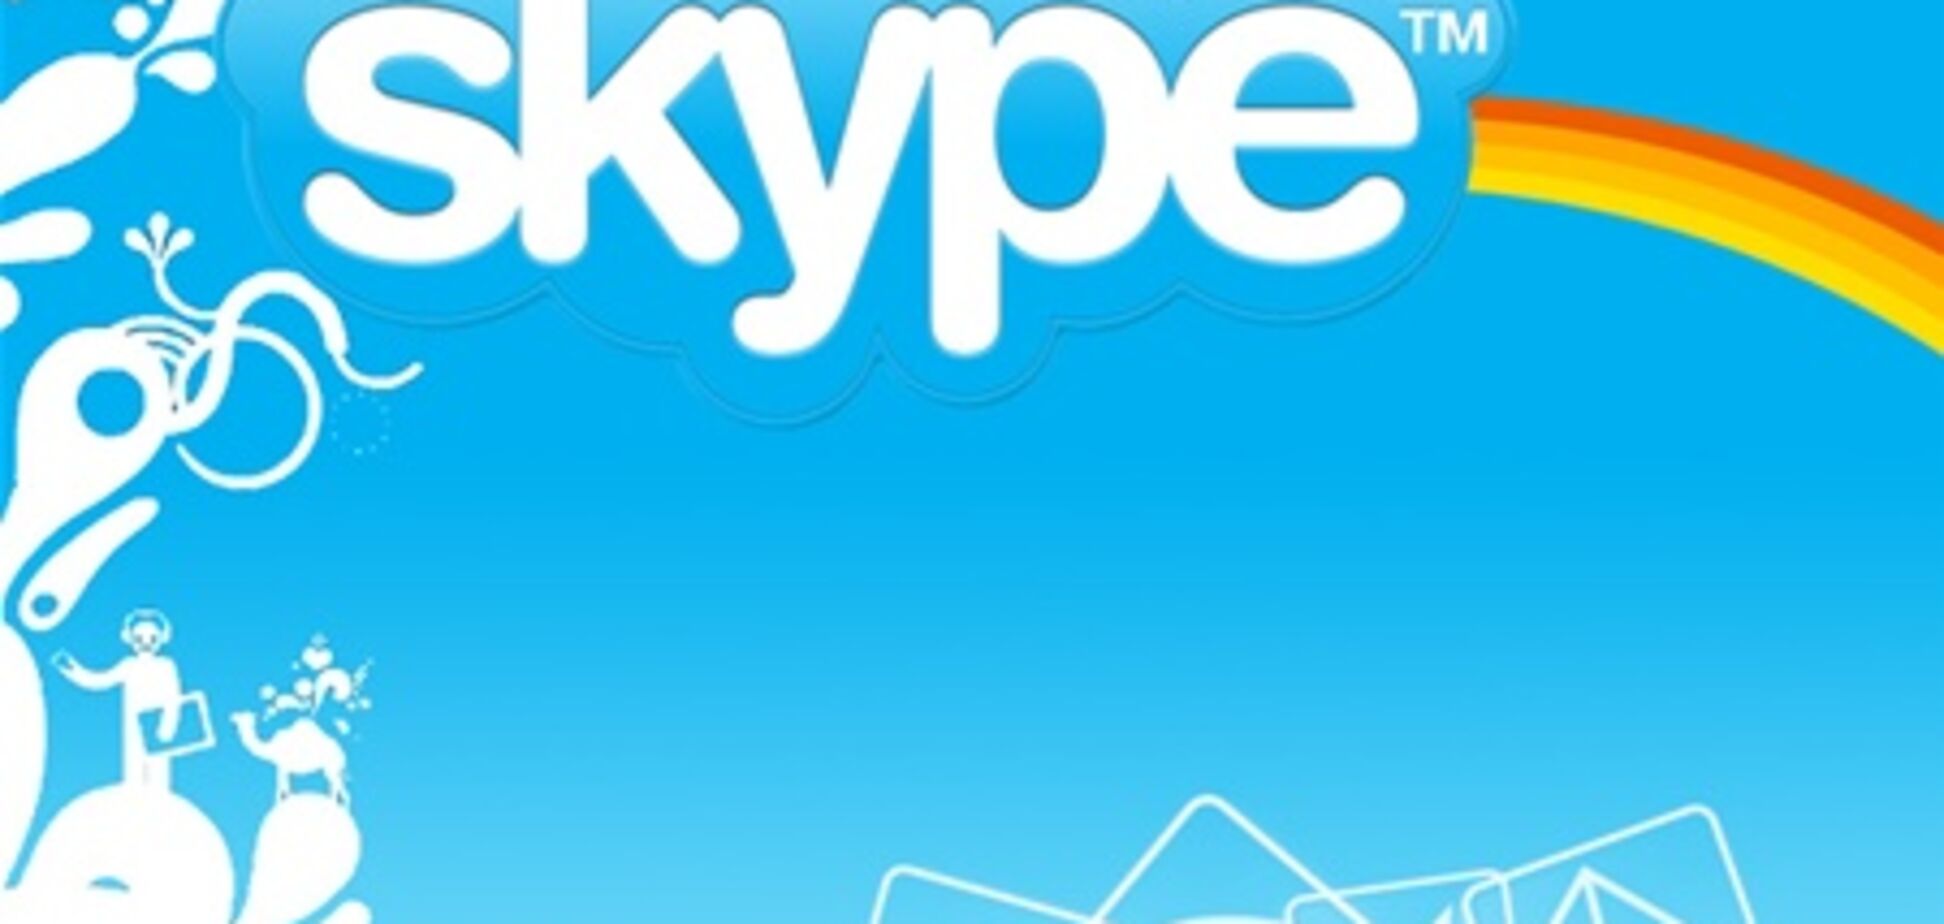 Третья часть мирового телефонного трафика — звонки в Skype